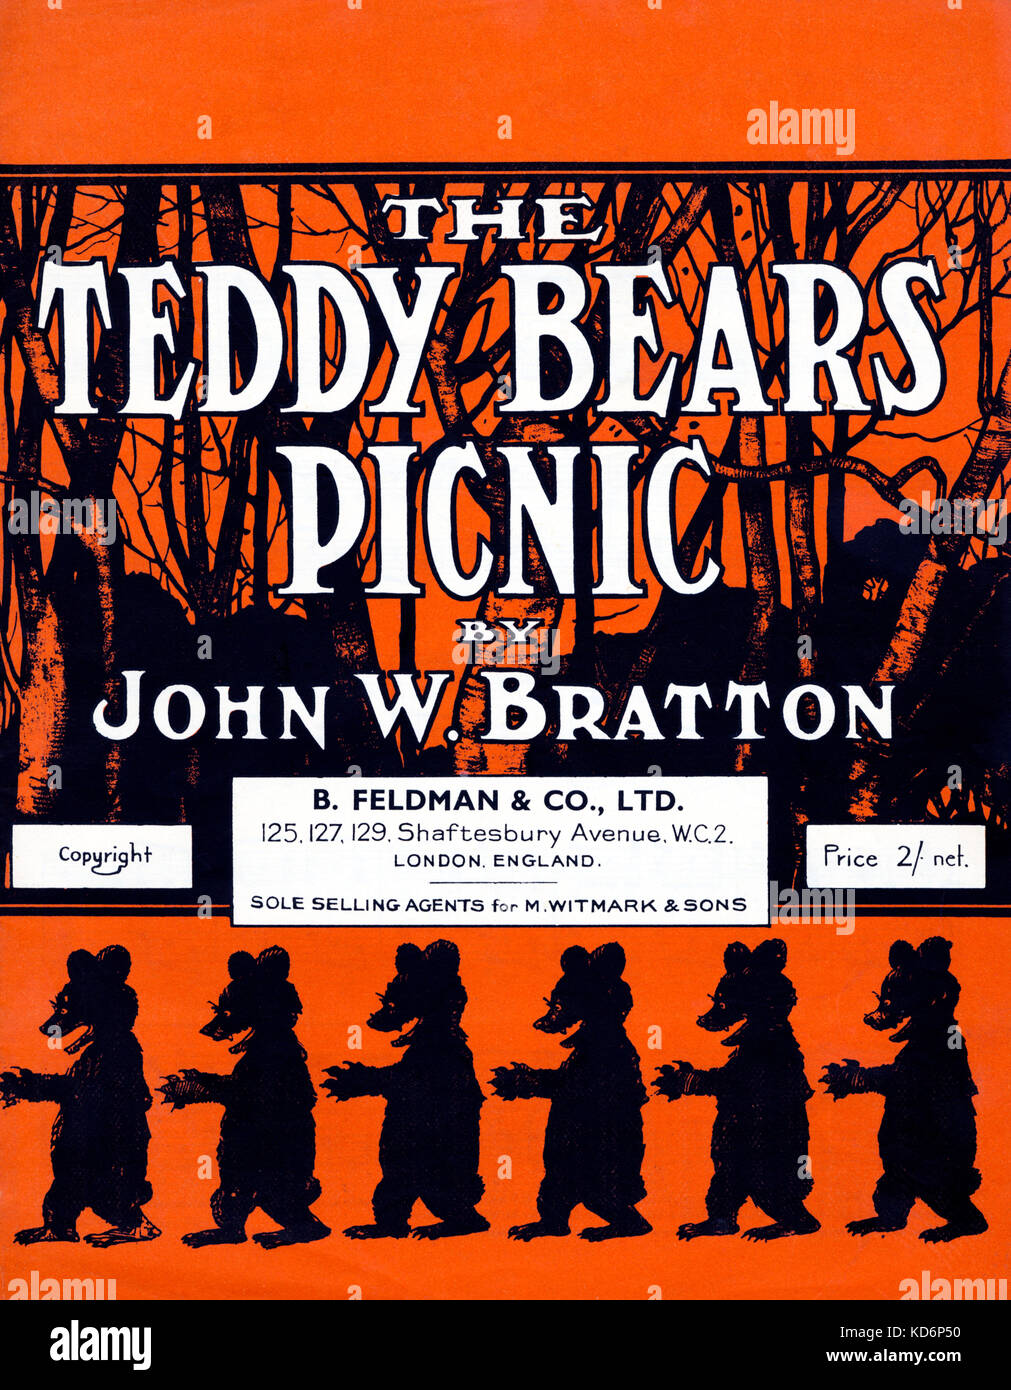 Die Teddybären Picknick score Abdeckung/Musik von John W Bratton von B. Feldman, London, Veröffentlicht Stockfoto